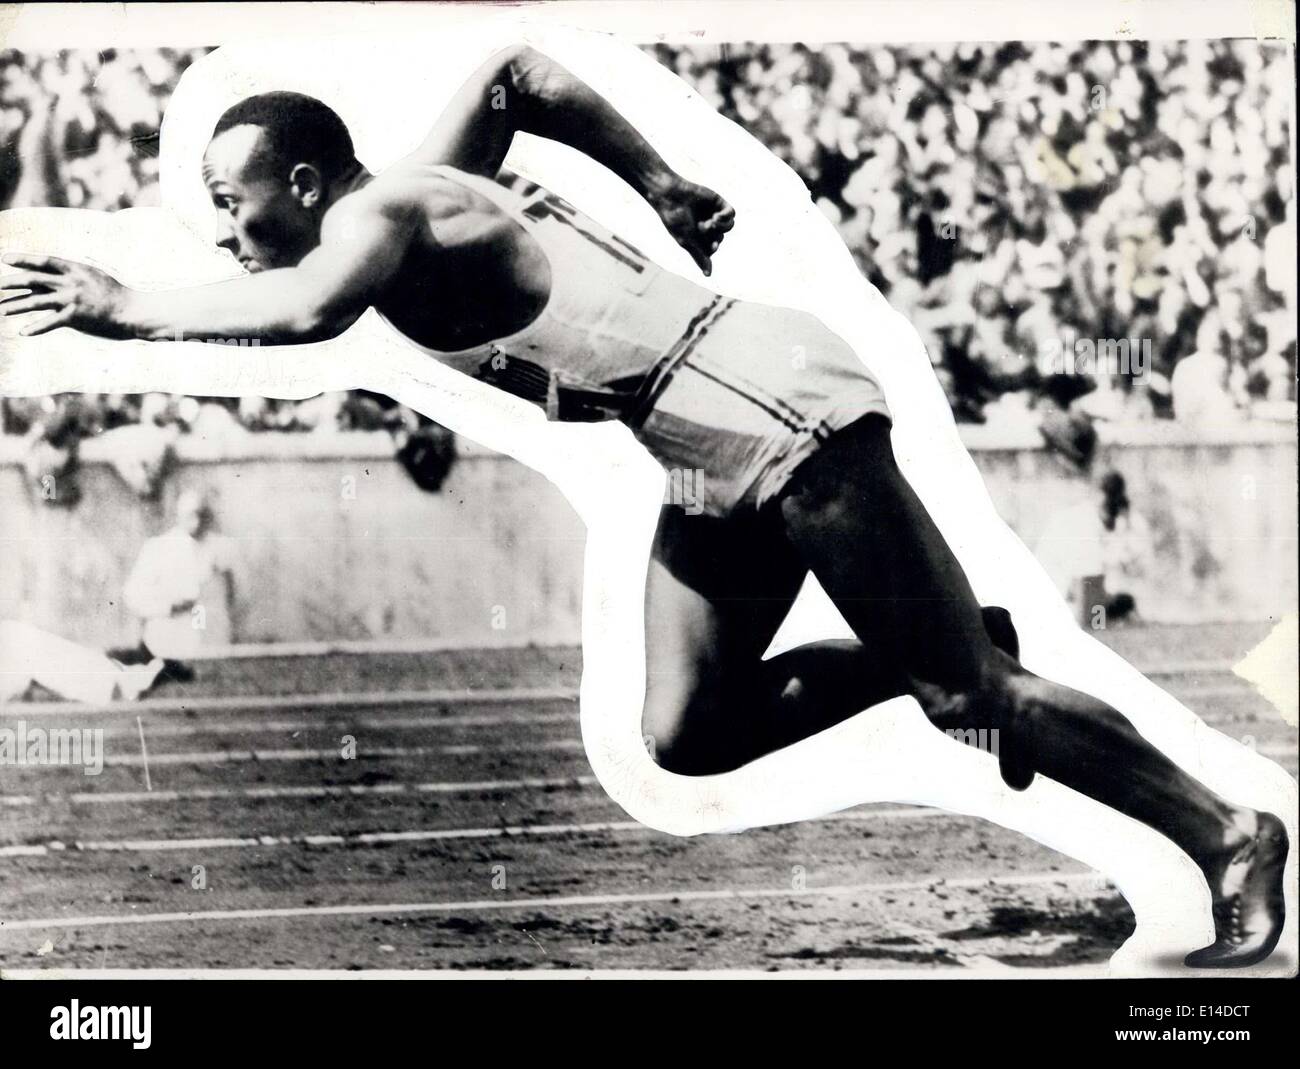 Apr. 17, 2012 - Jesse Owens - Olympics 1936. Stock Photo